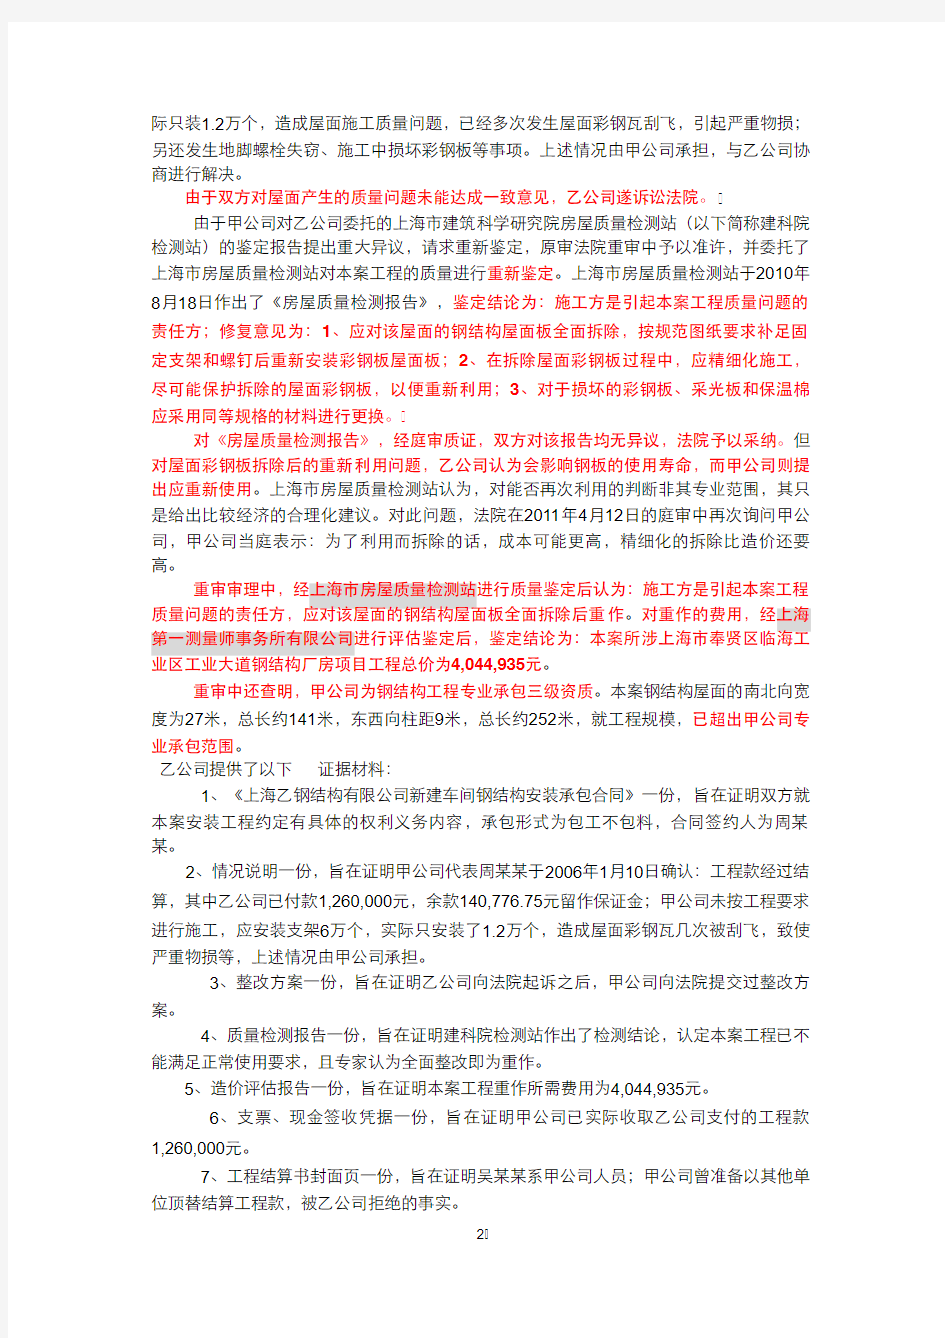 王文杰律师推荐研究的建设工程纠纷案5000例